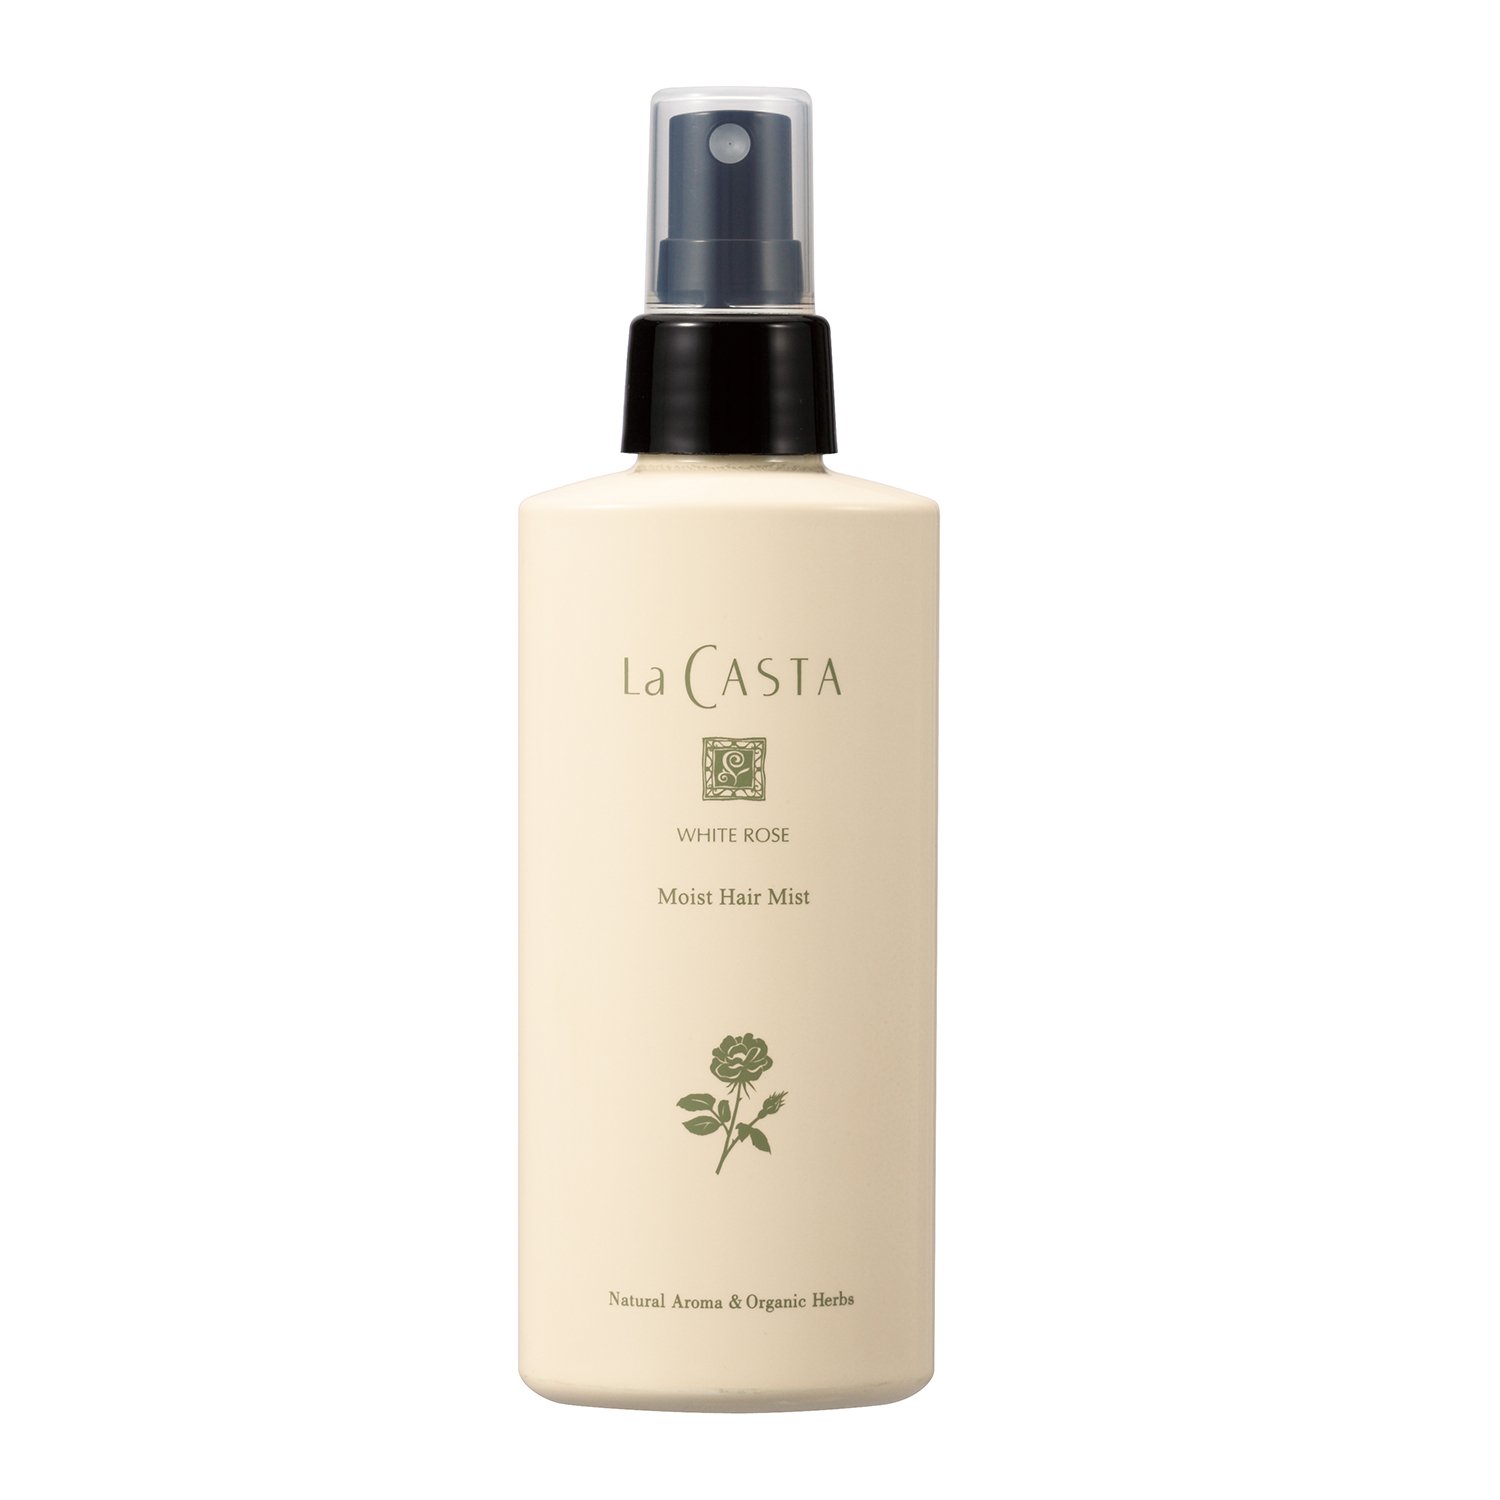 La CASTA (ラ・カスタ) ホワイトローズ モイスト ヘアミスト (髪専用 化粧水) みずみずしいローズの香り しっとり感つづく 髪専用 トリ